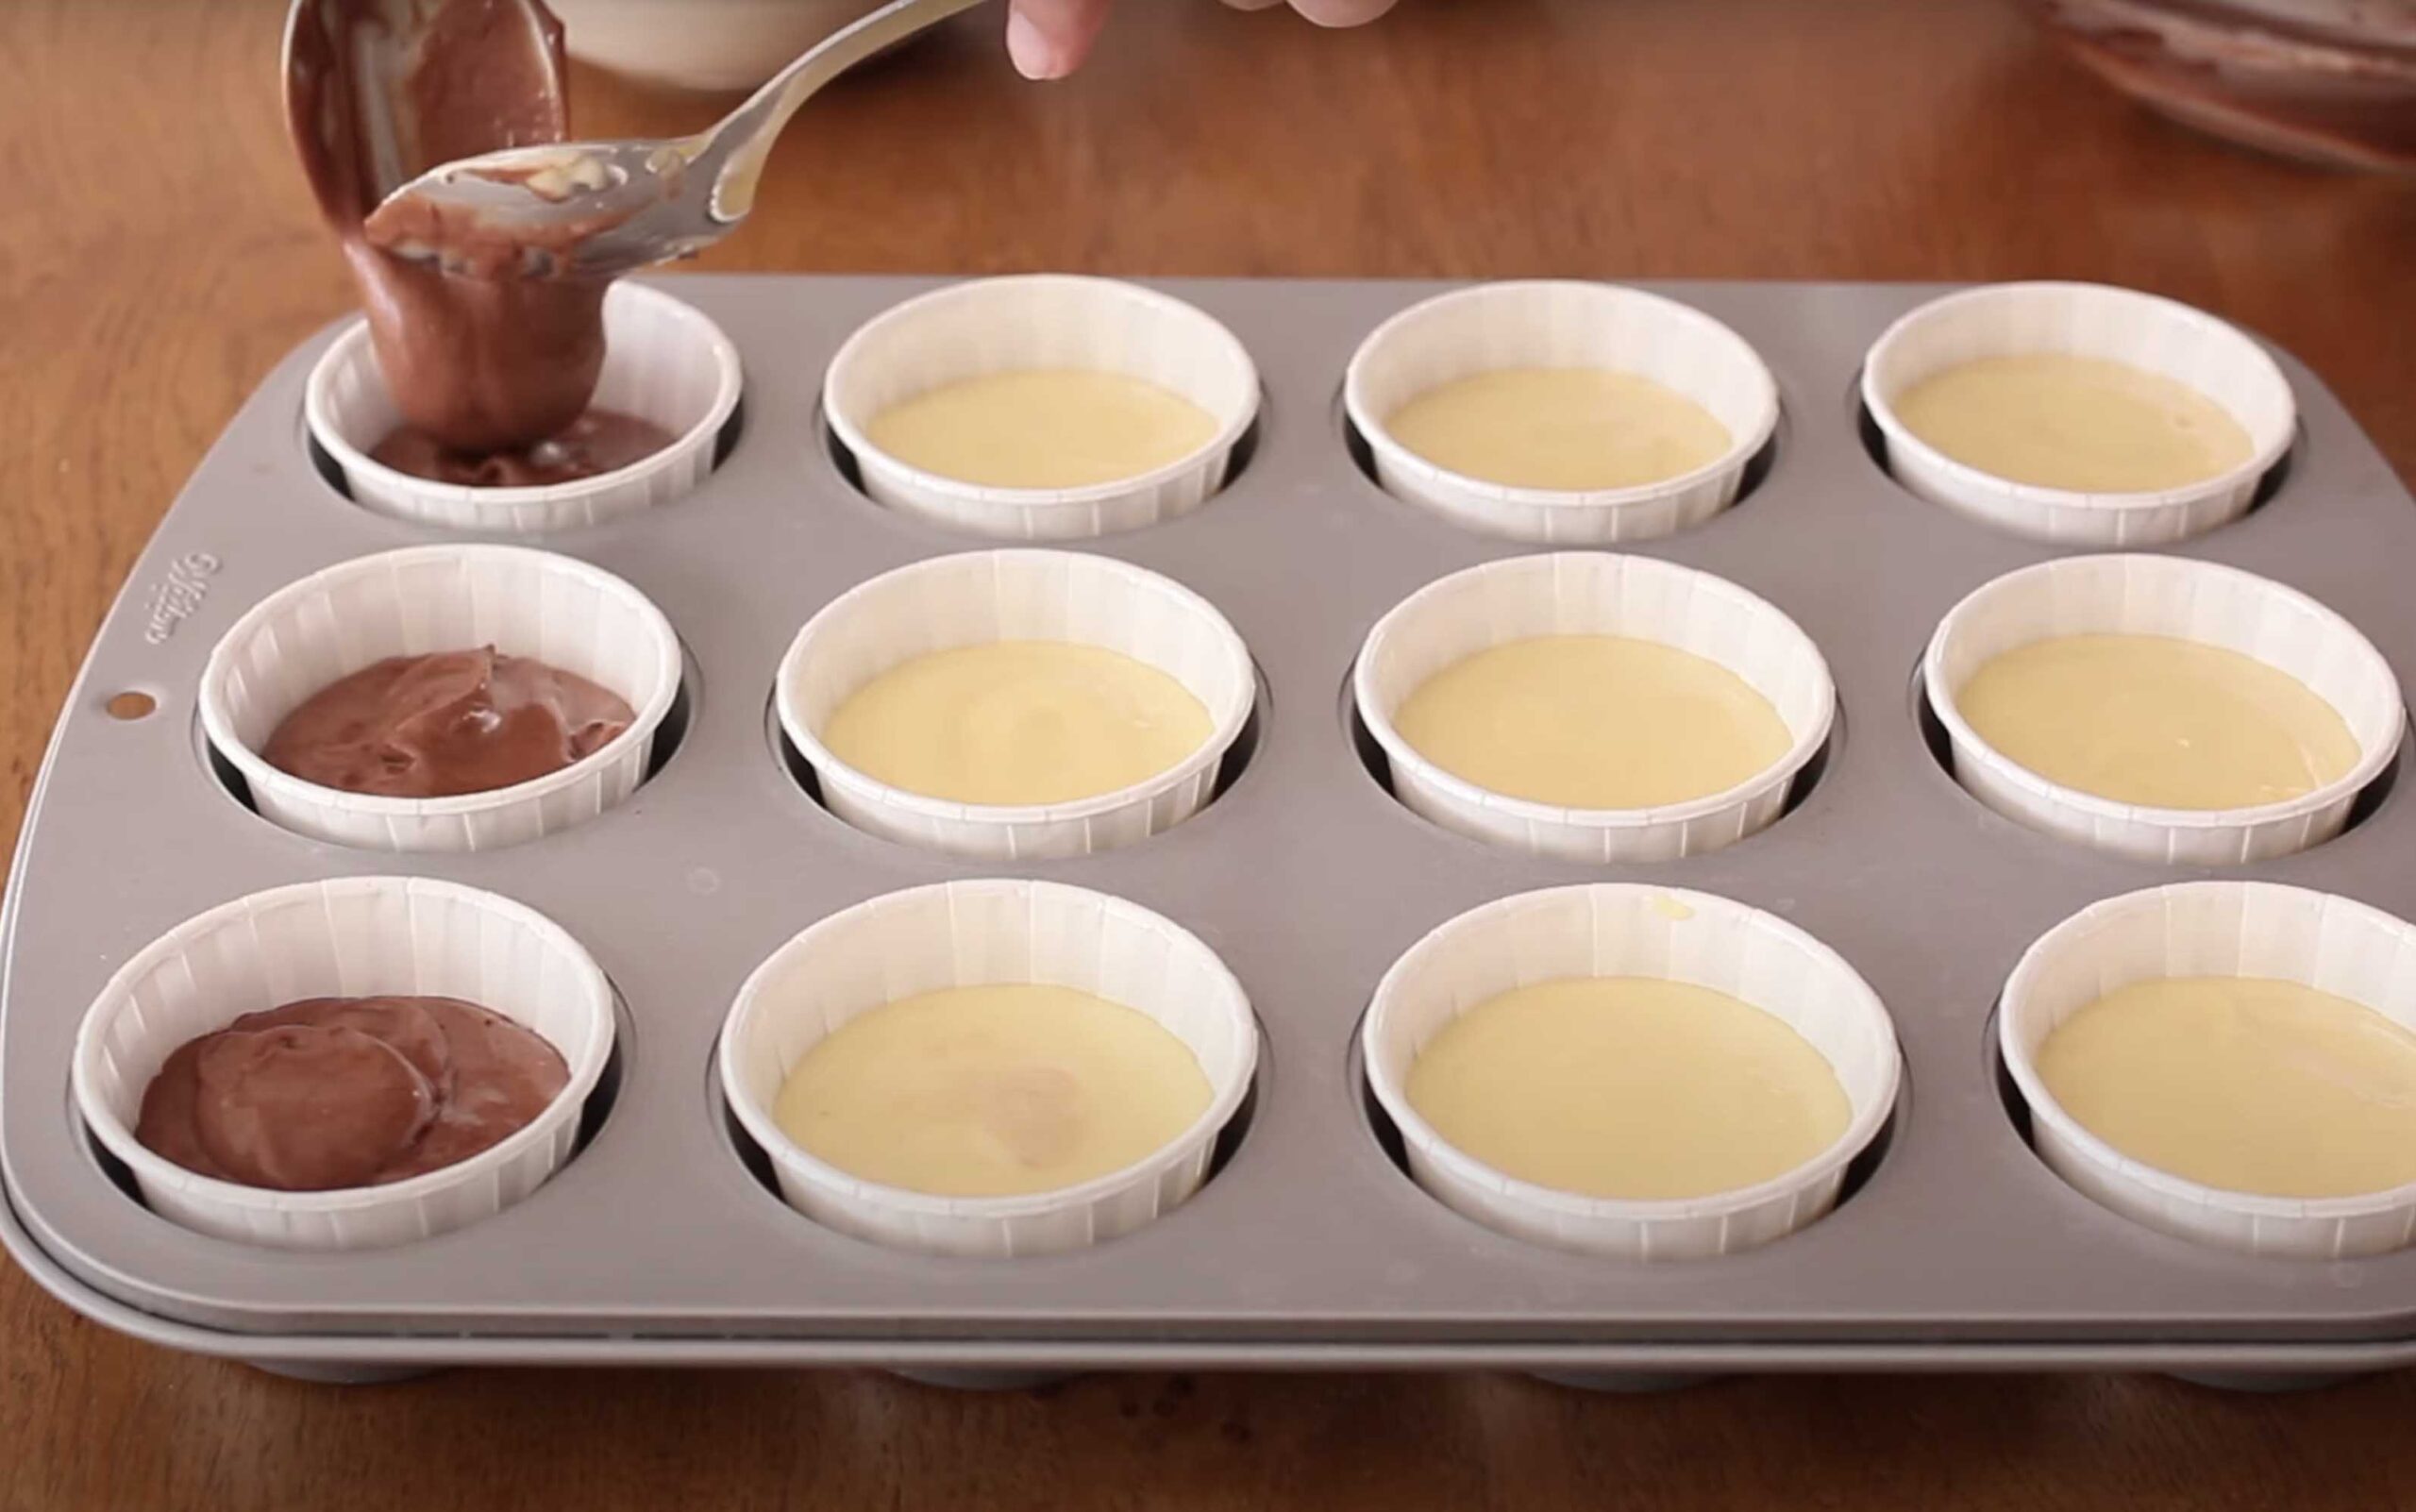 Muffin allo yogurt: un impasto mille idee - Step 3